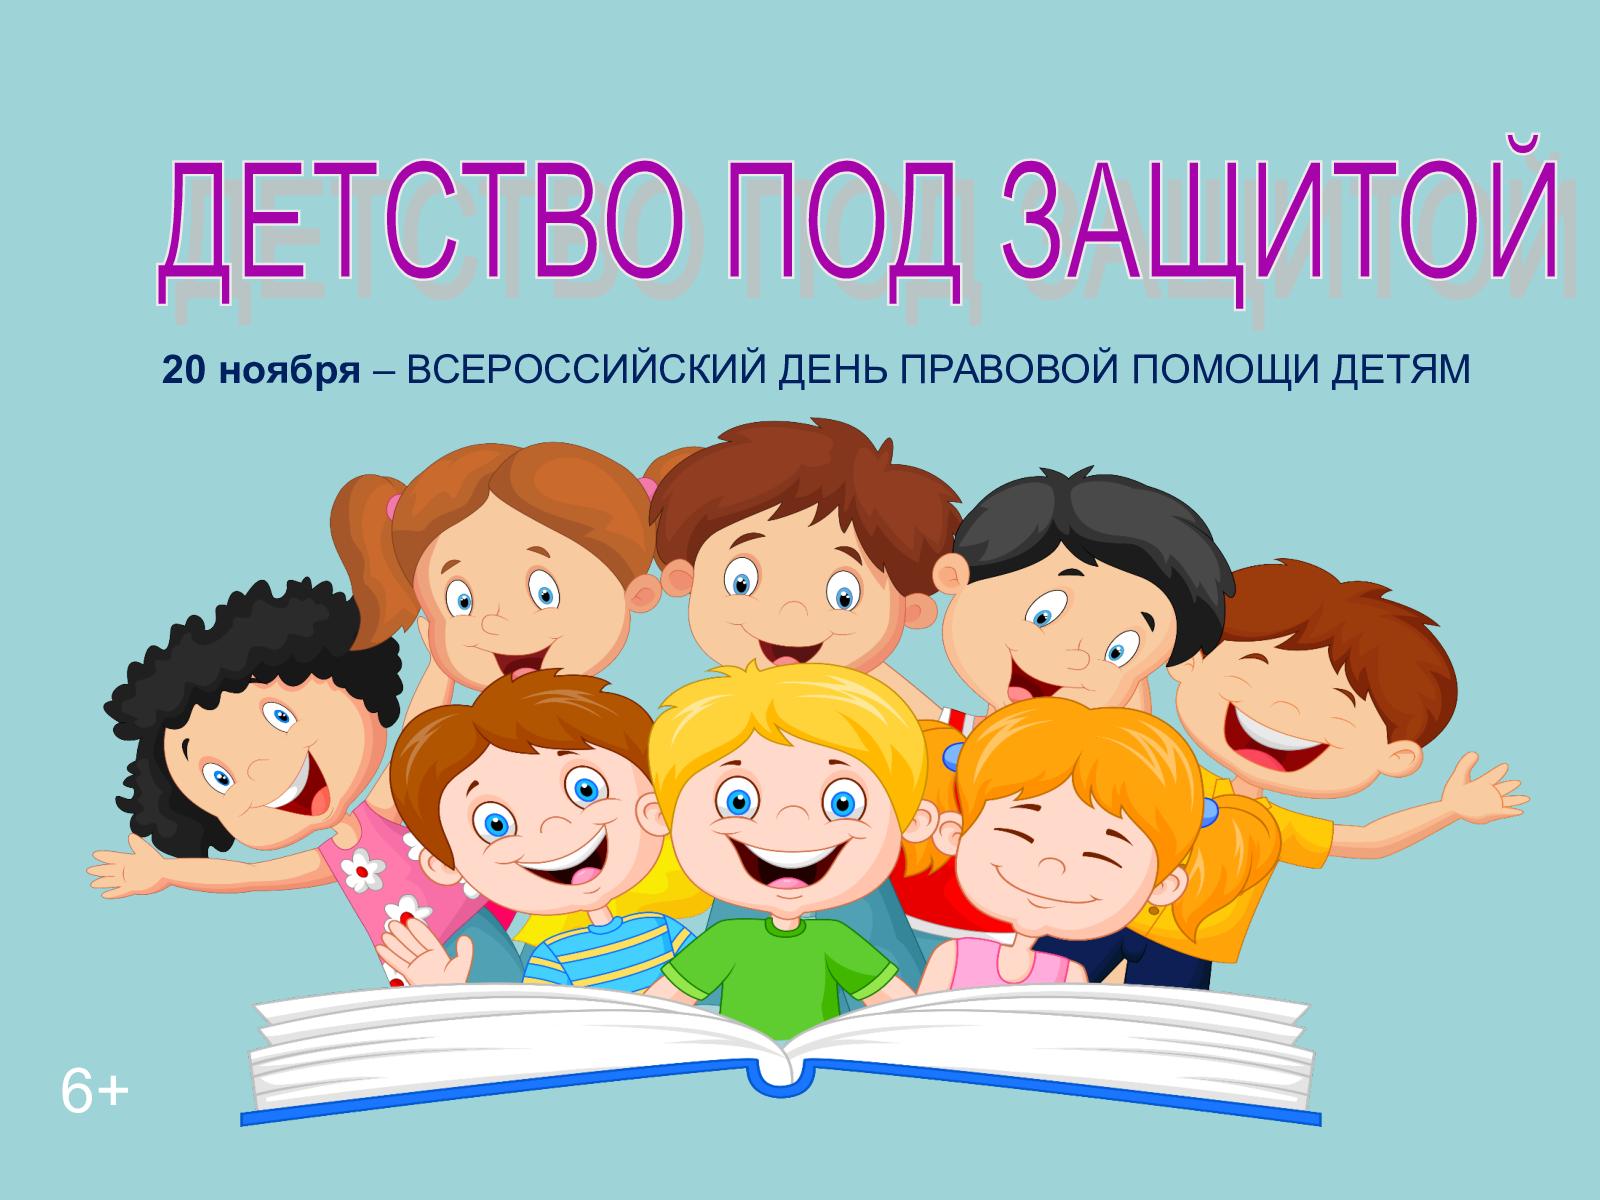 Мероприятия, посвященные Всероссийскому Дню правовой помощи детям.